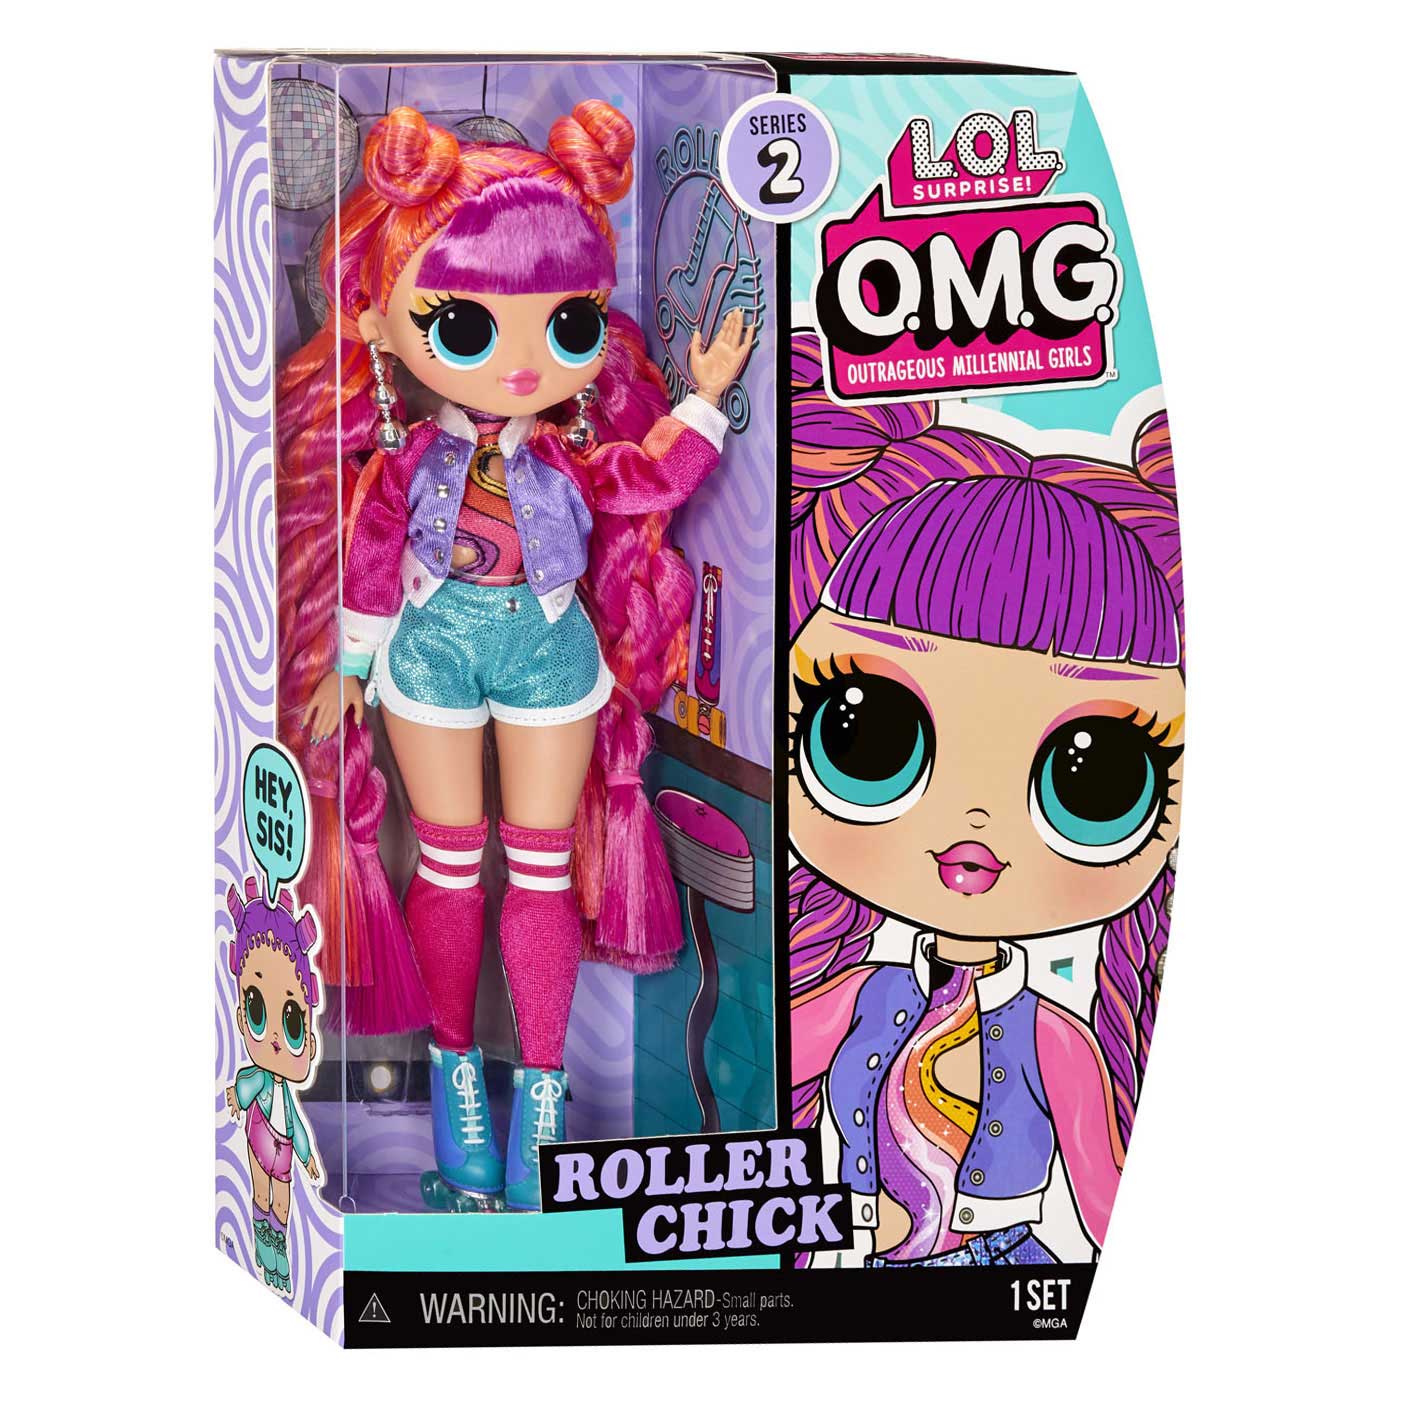 L.O.L. Surprise OMG HoS Pop - Roller Chick